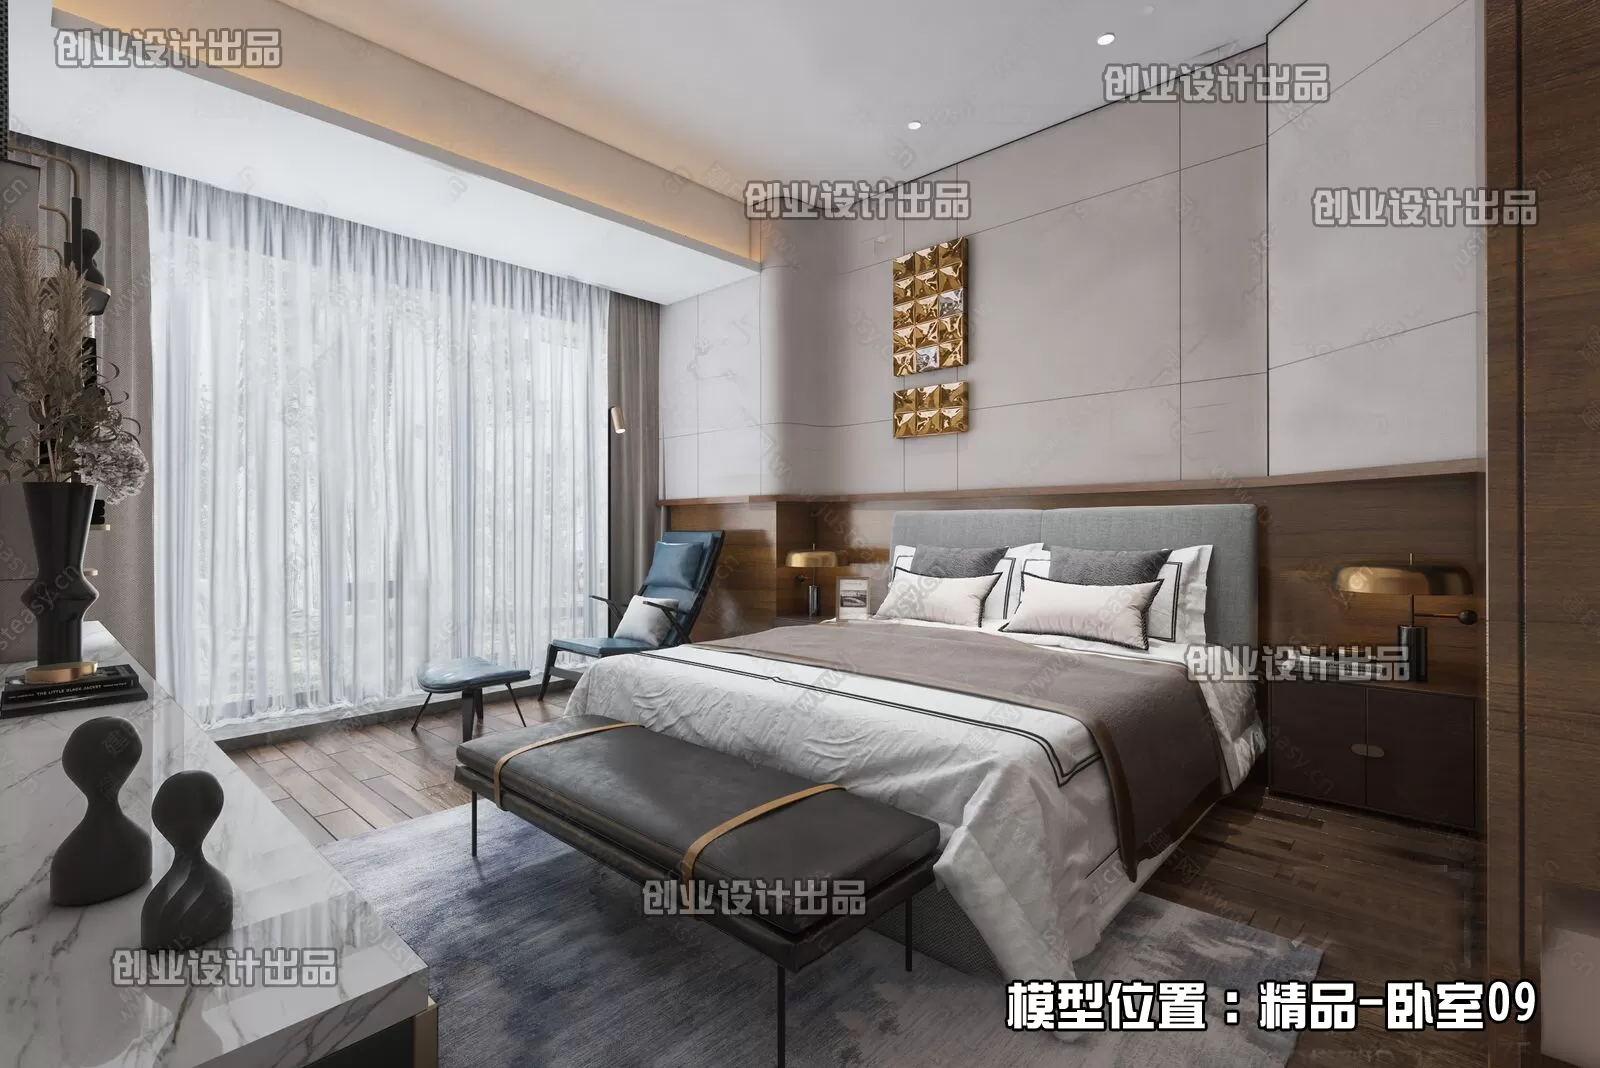 Bedroom – Modern Interior Design – 3D Models – 155